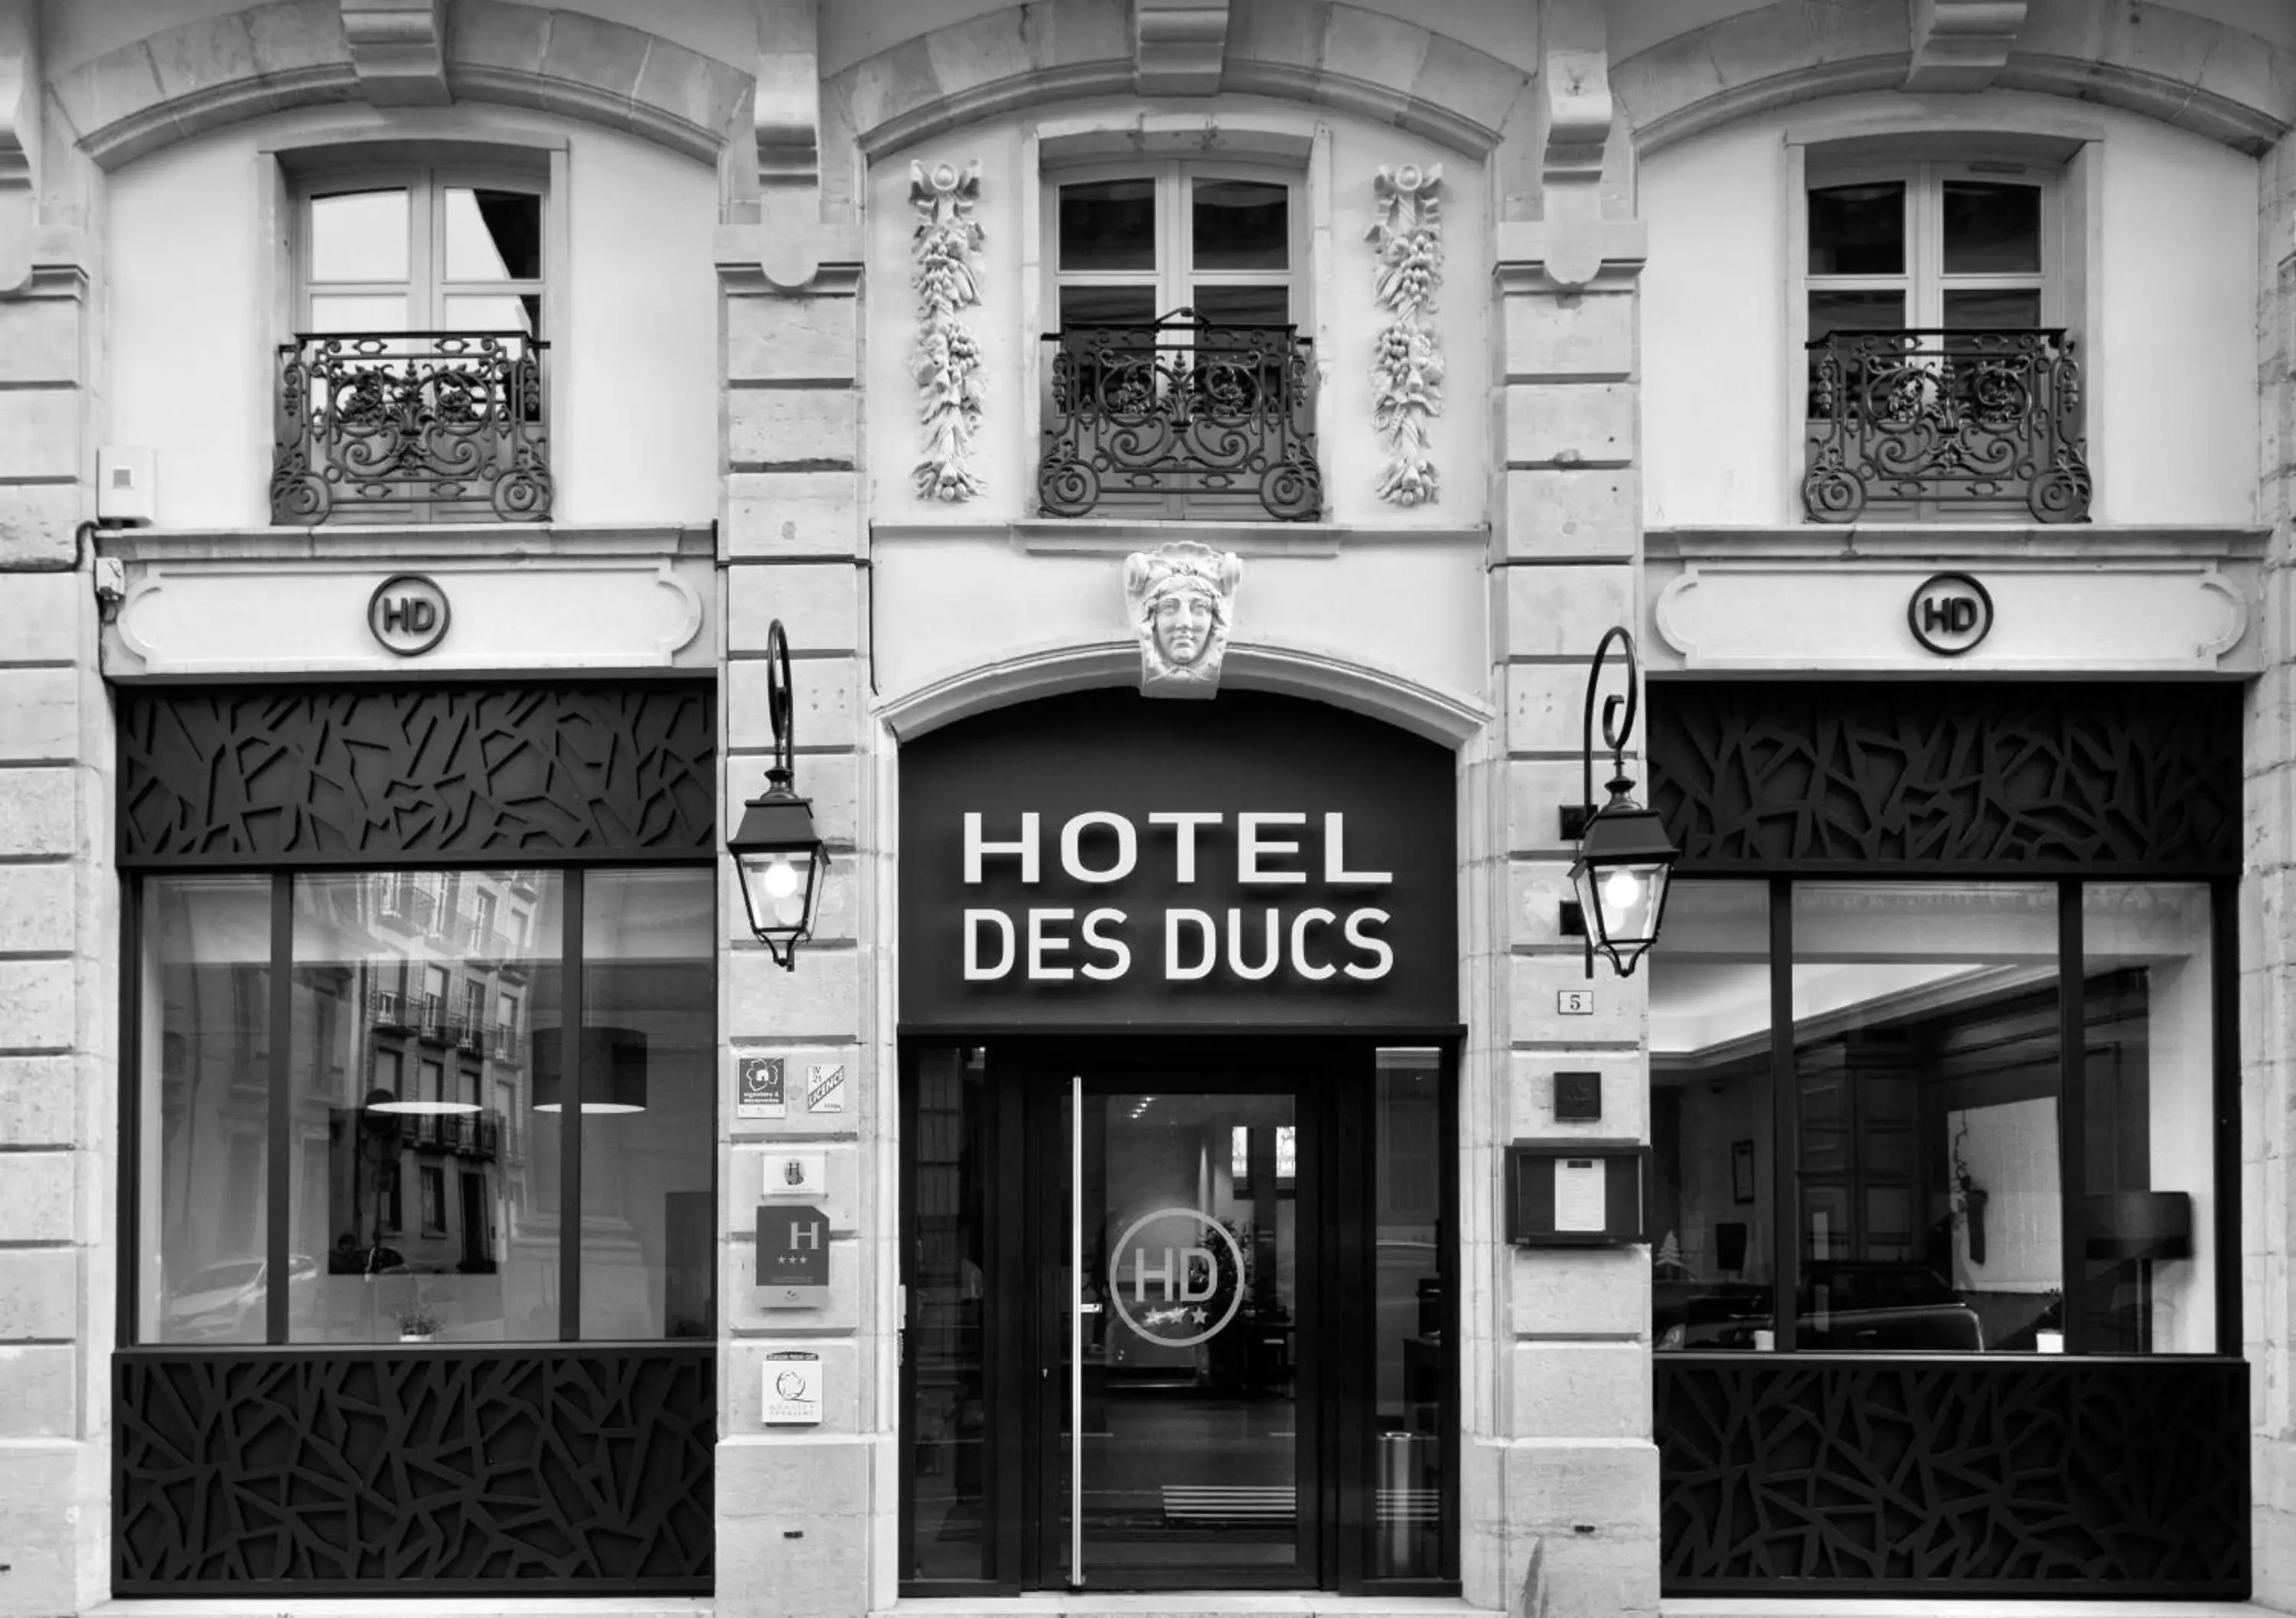 Facade/entrance in Hôtel des Ducs